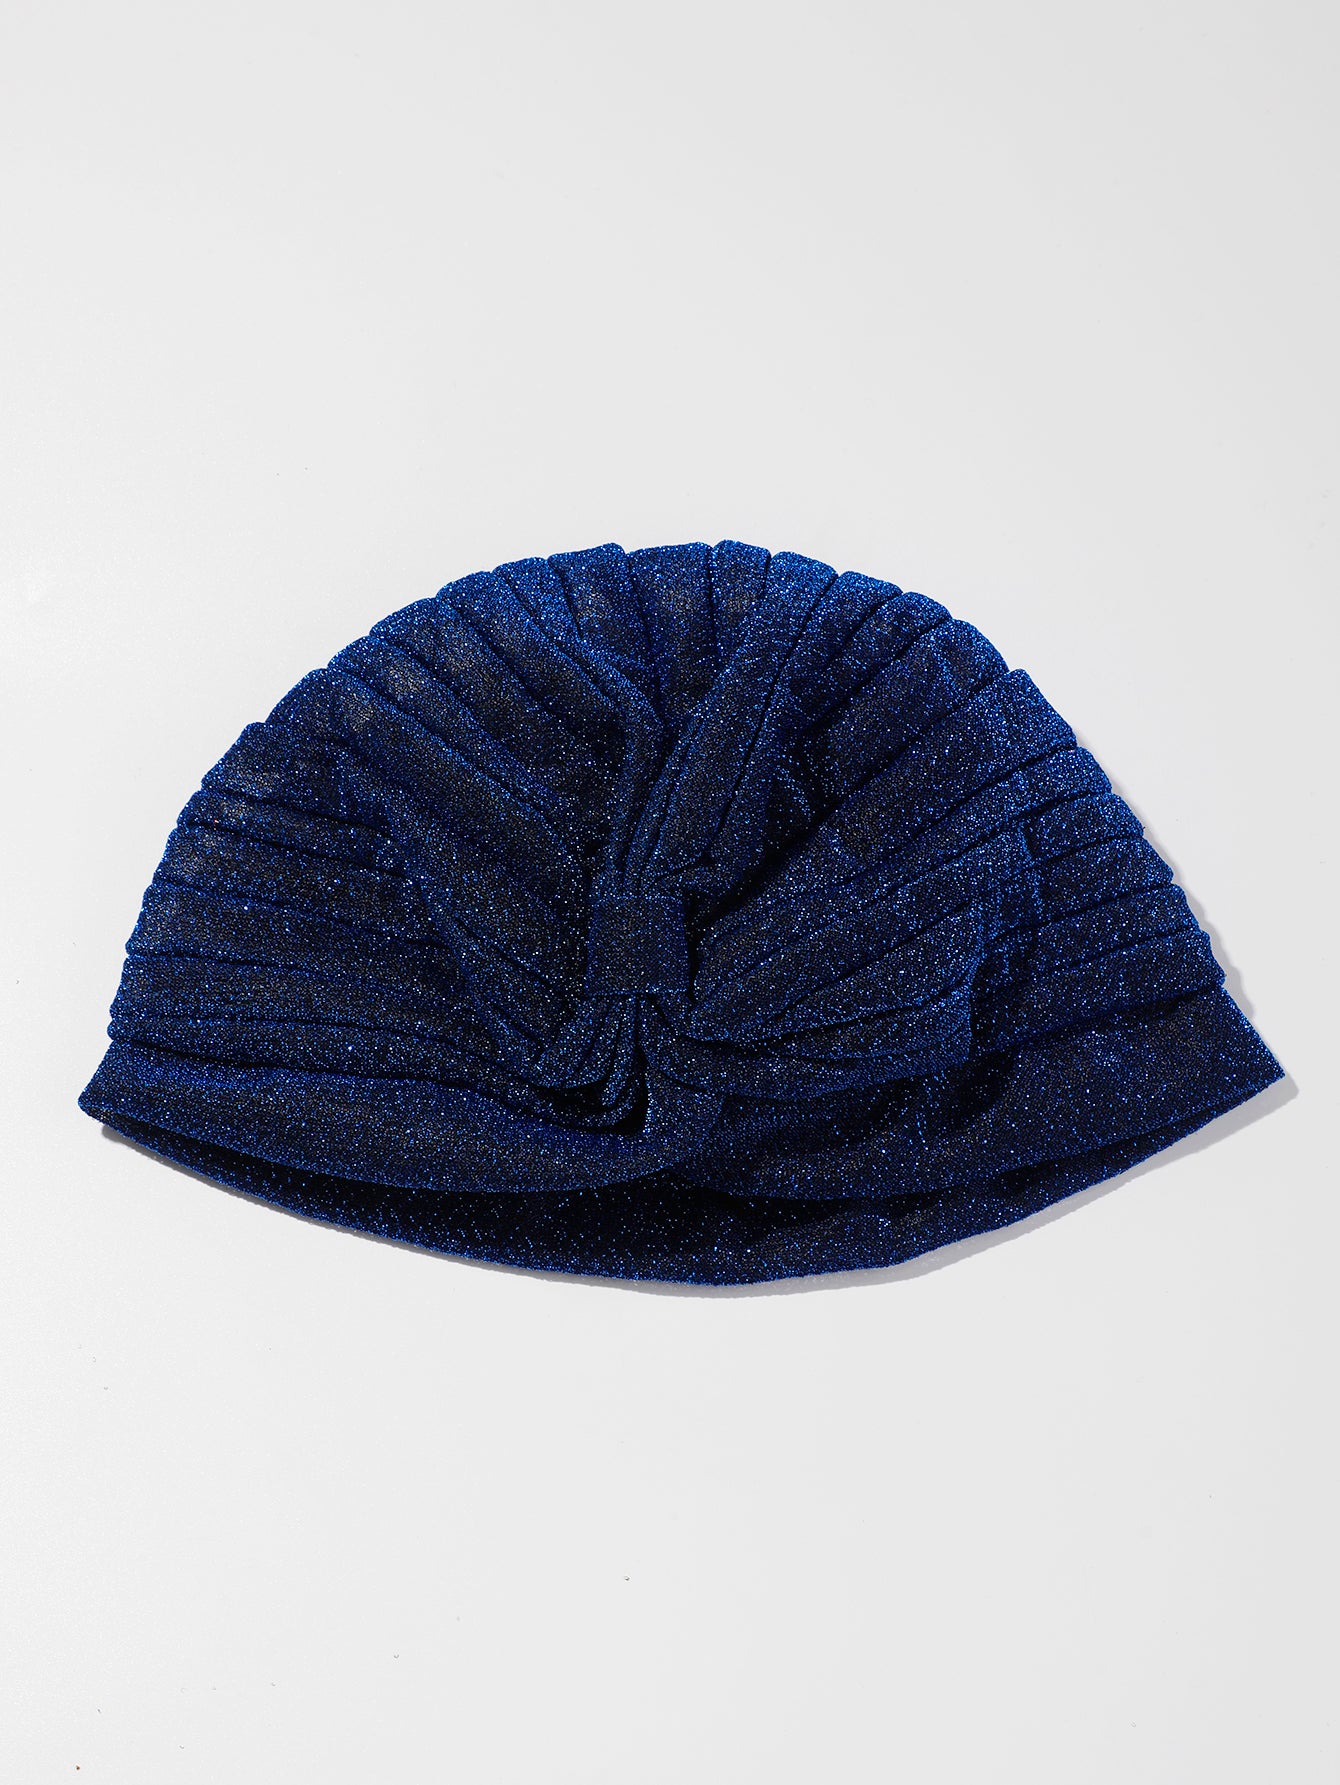 ARTILADY blue hat  Shiny hat